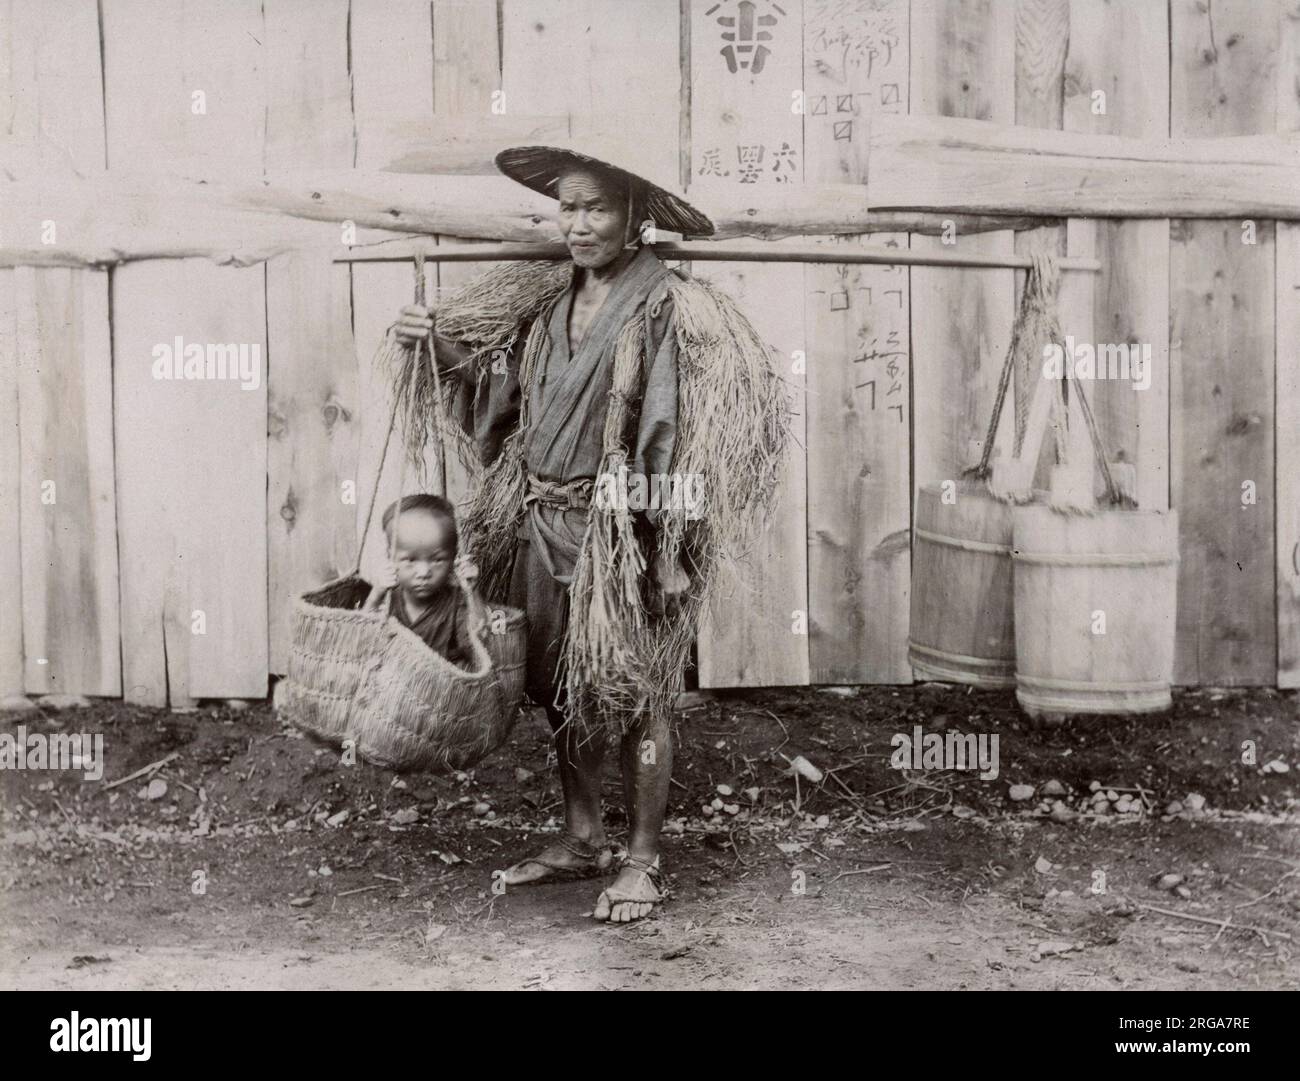 Japanischer Bauer Mann, der Kind in einem Korb trägt. Vintage 19. Jahrhundert Foto. Stockfoto